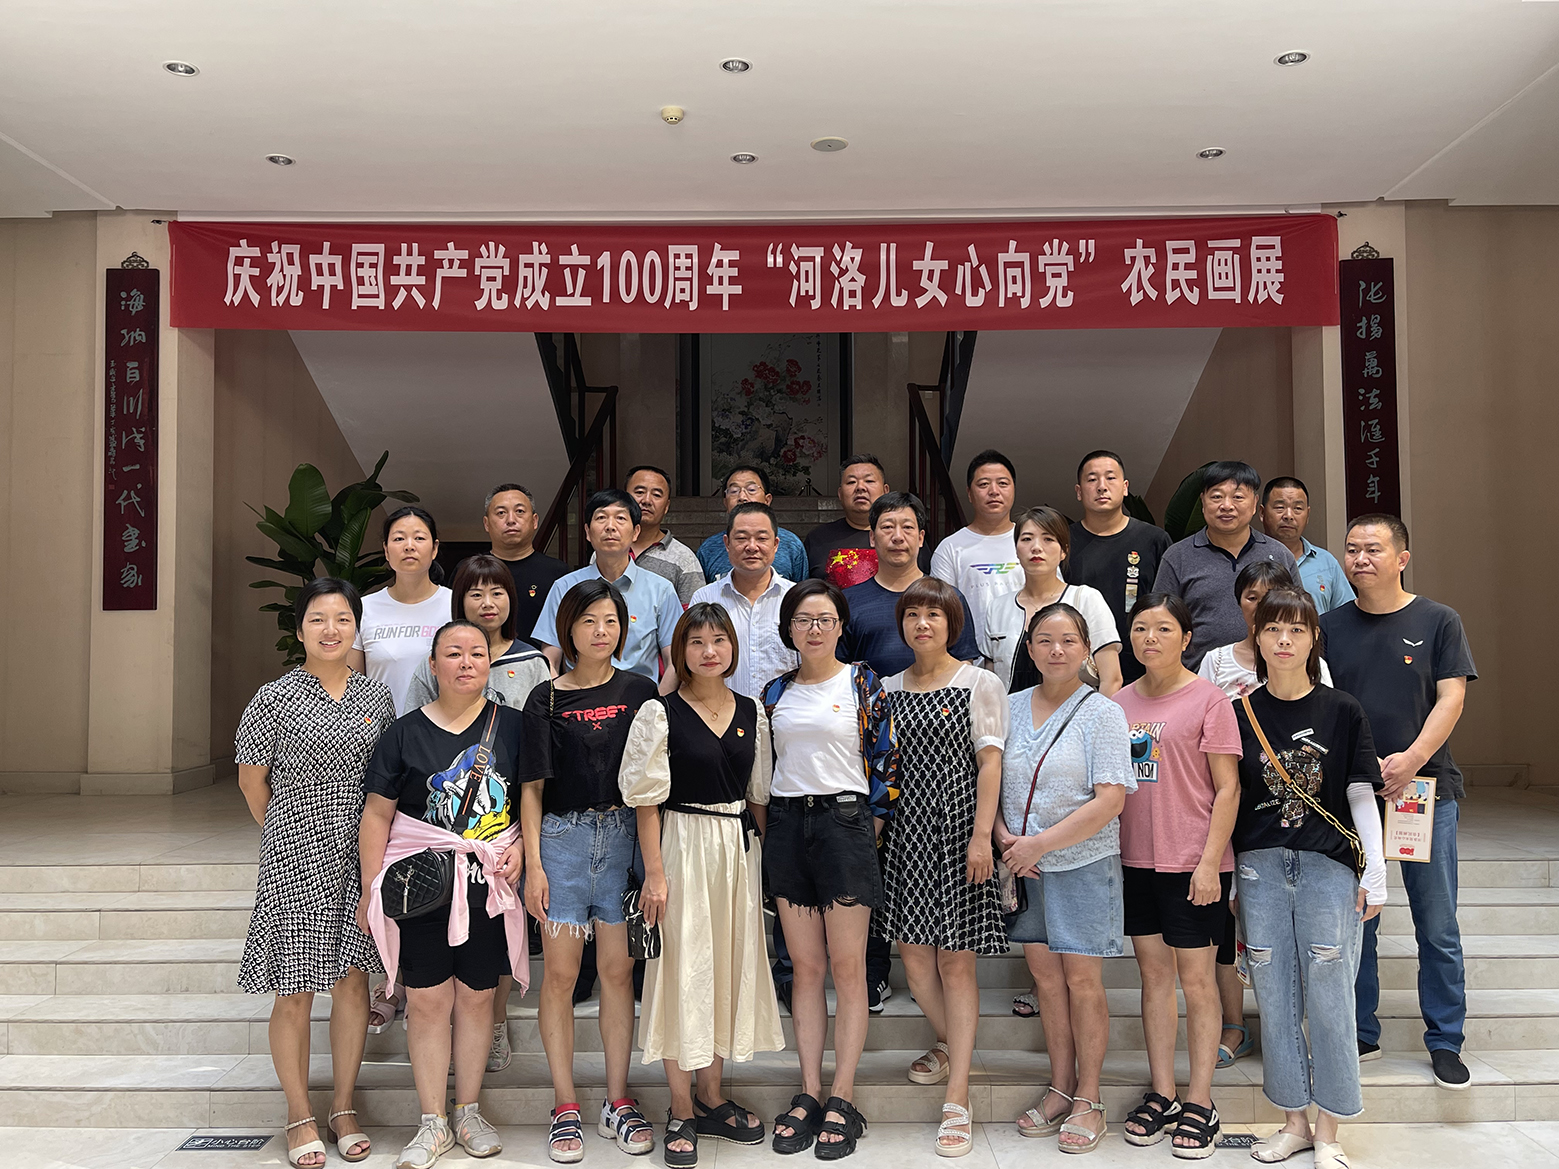 7月13日 張海藝術館參觀慶祝中國共產黨成立100周年“河洛兒女心向黨”農民畫展